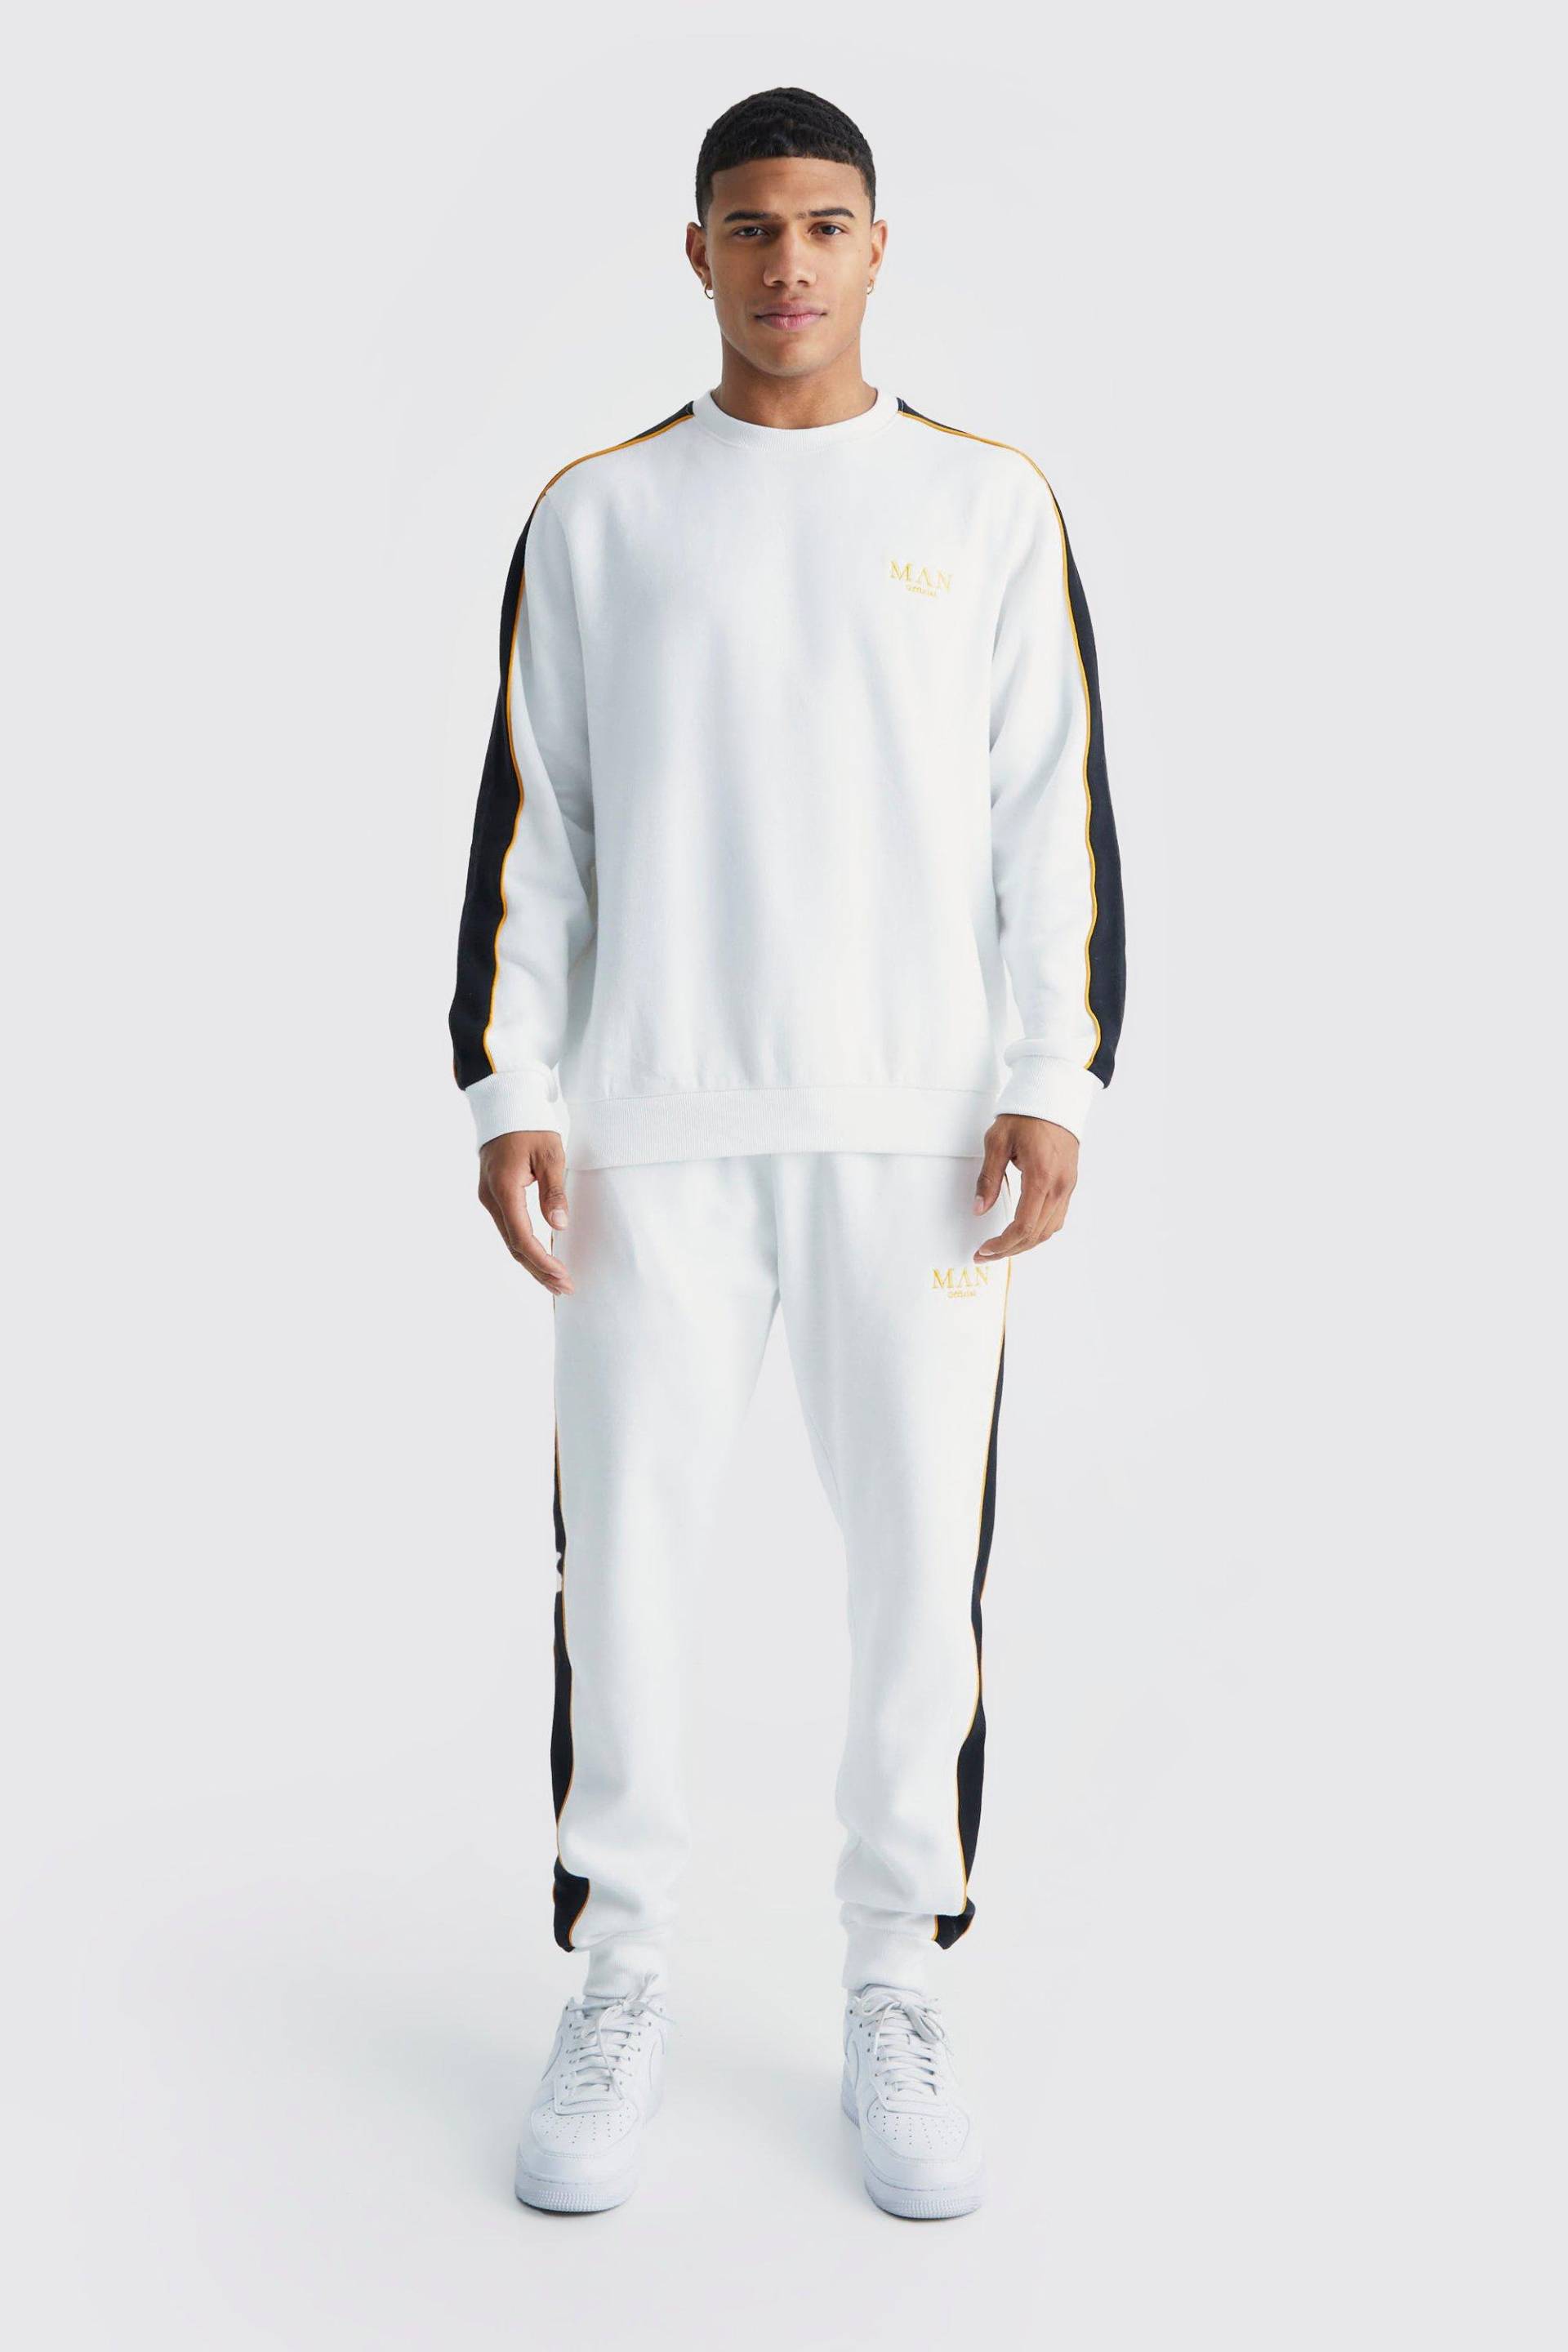 Mens Man Gold Sweatshirt-Trainingsanzug mit Seitenstreifen - Weiß - L, Weiß von boohooman